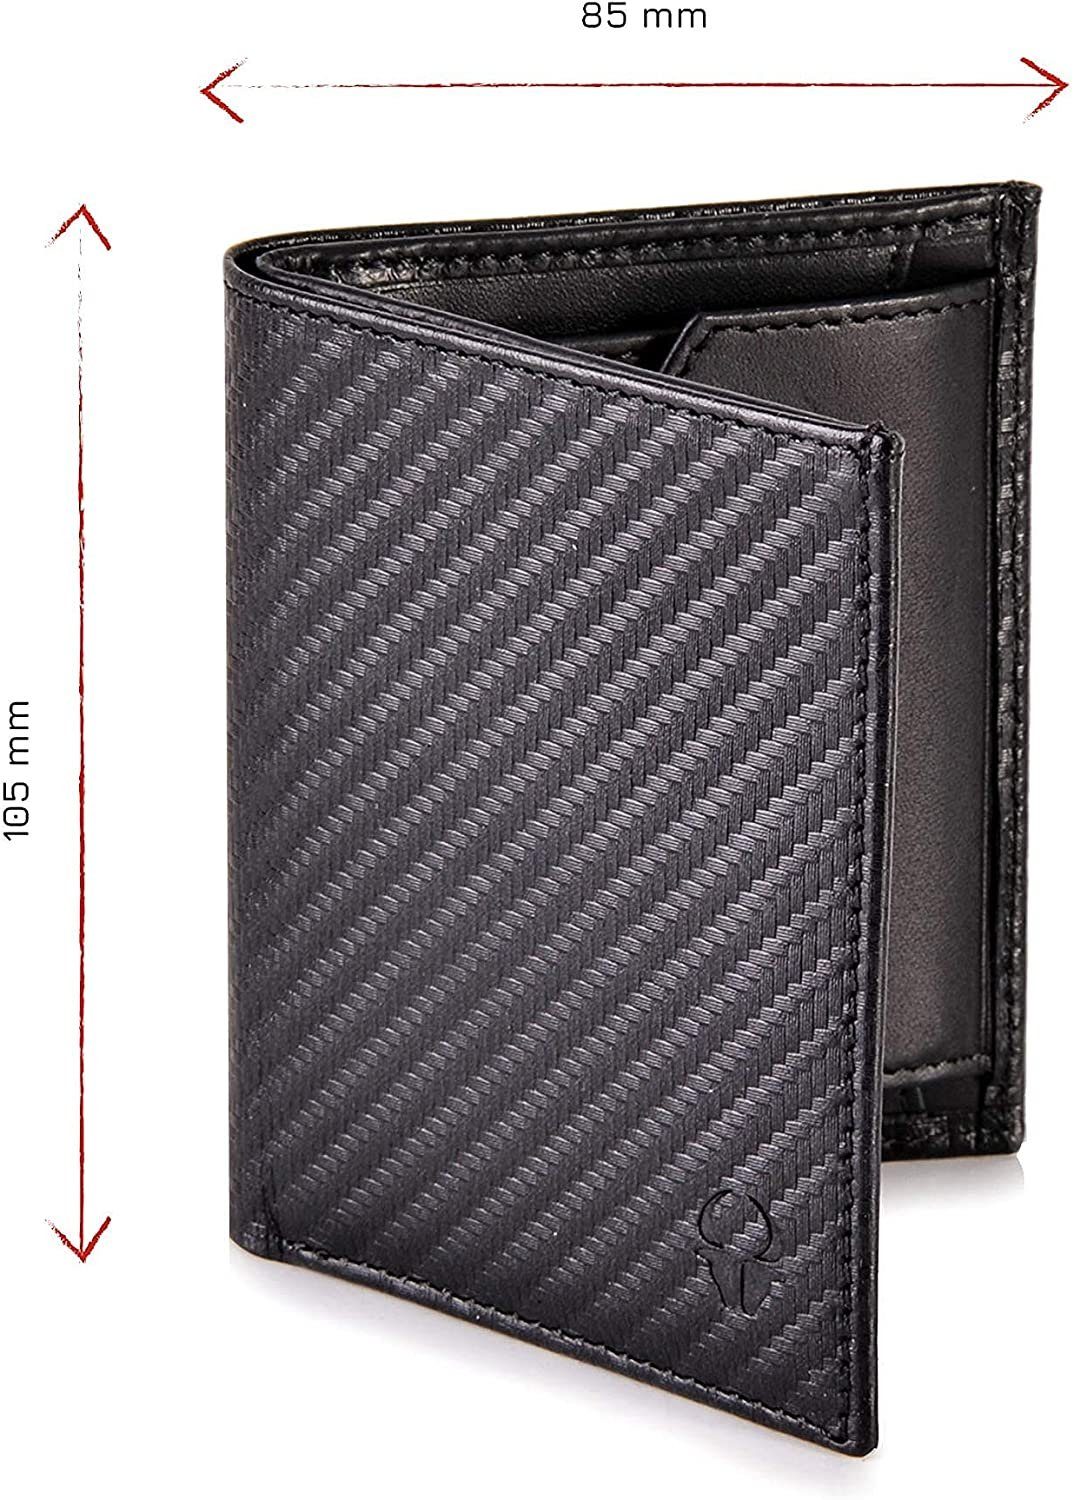 Wallet Mit Slim Kartenfächer, Mini Geldbörse Echtleder Geldbeutel RFID Schwarz Schutz 6 Vintage Donbolso Mnzfachvintage